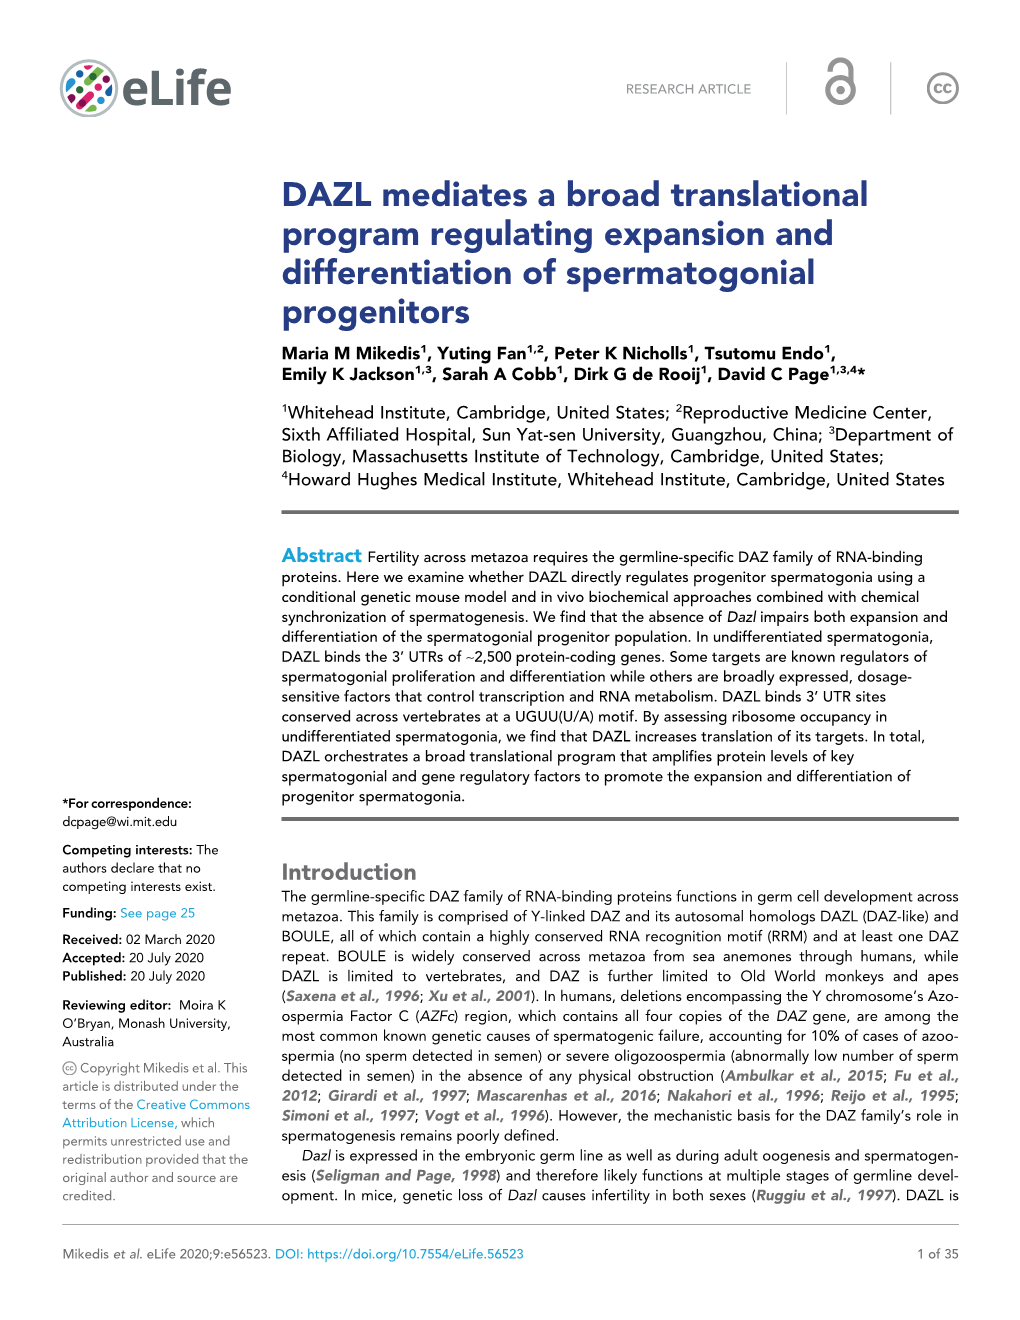 DAZL Mediates a Broad Translational Program Regulating Expansion And